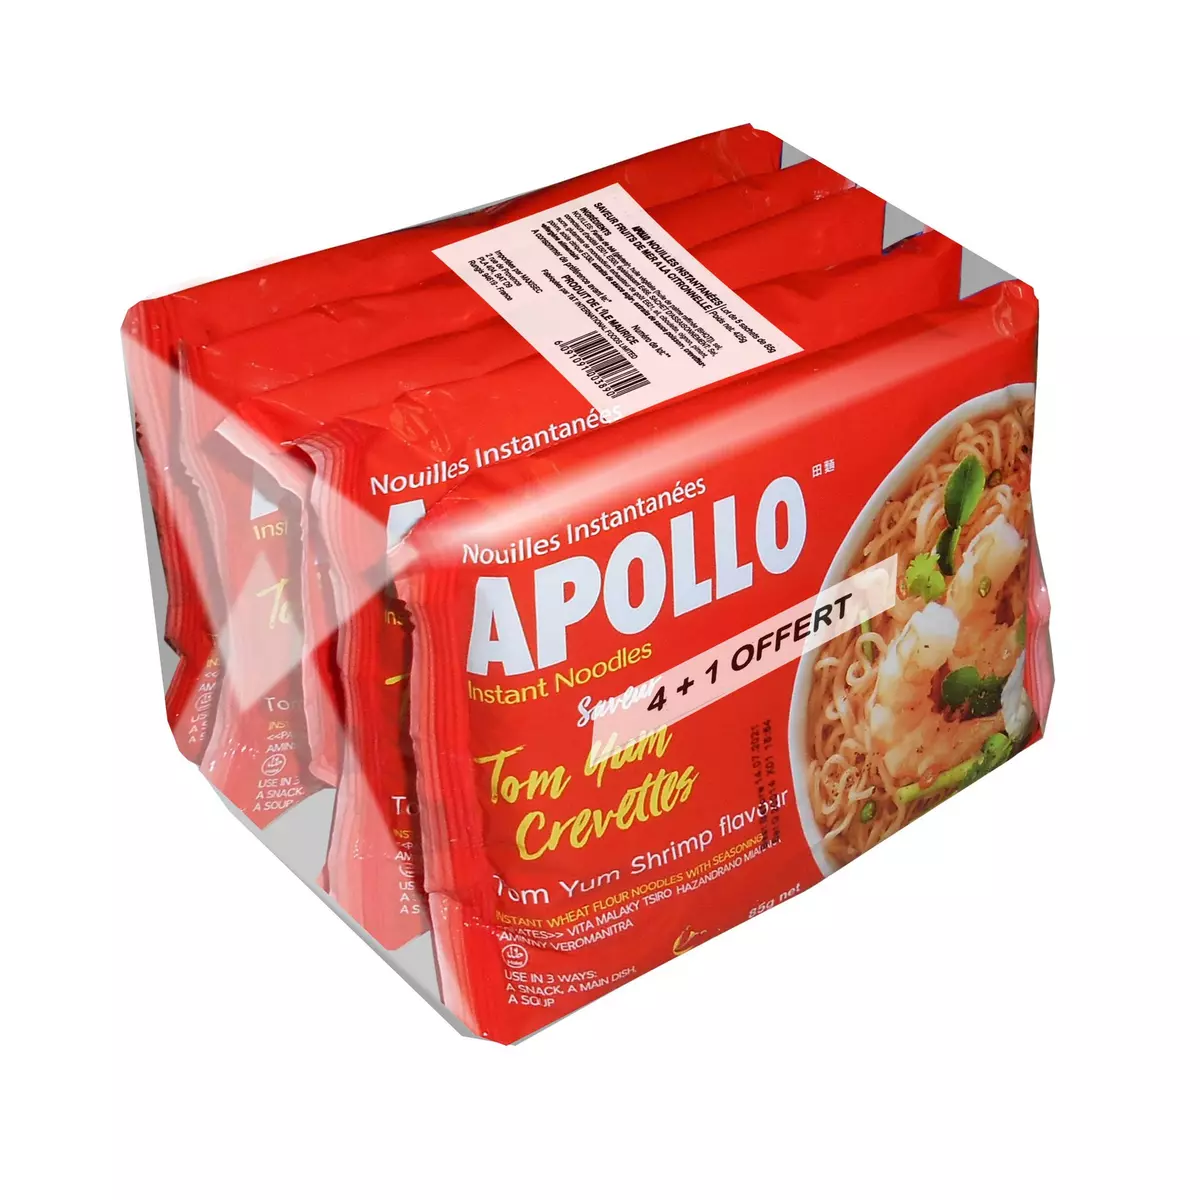 APOLLO Nouille asiatiques saveur crevettes 4+1 offert 425g